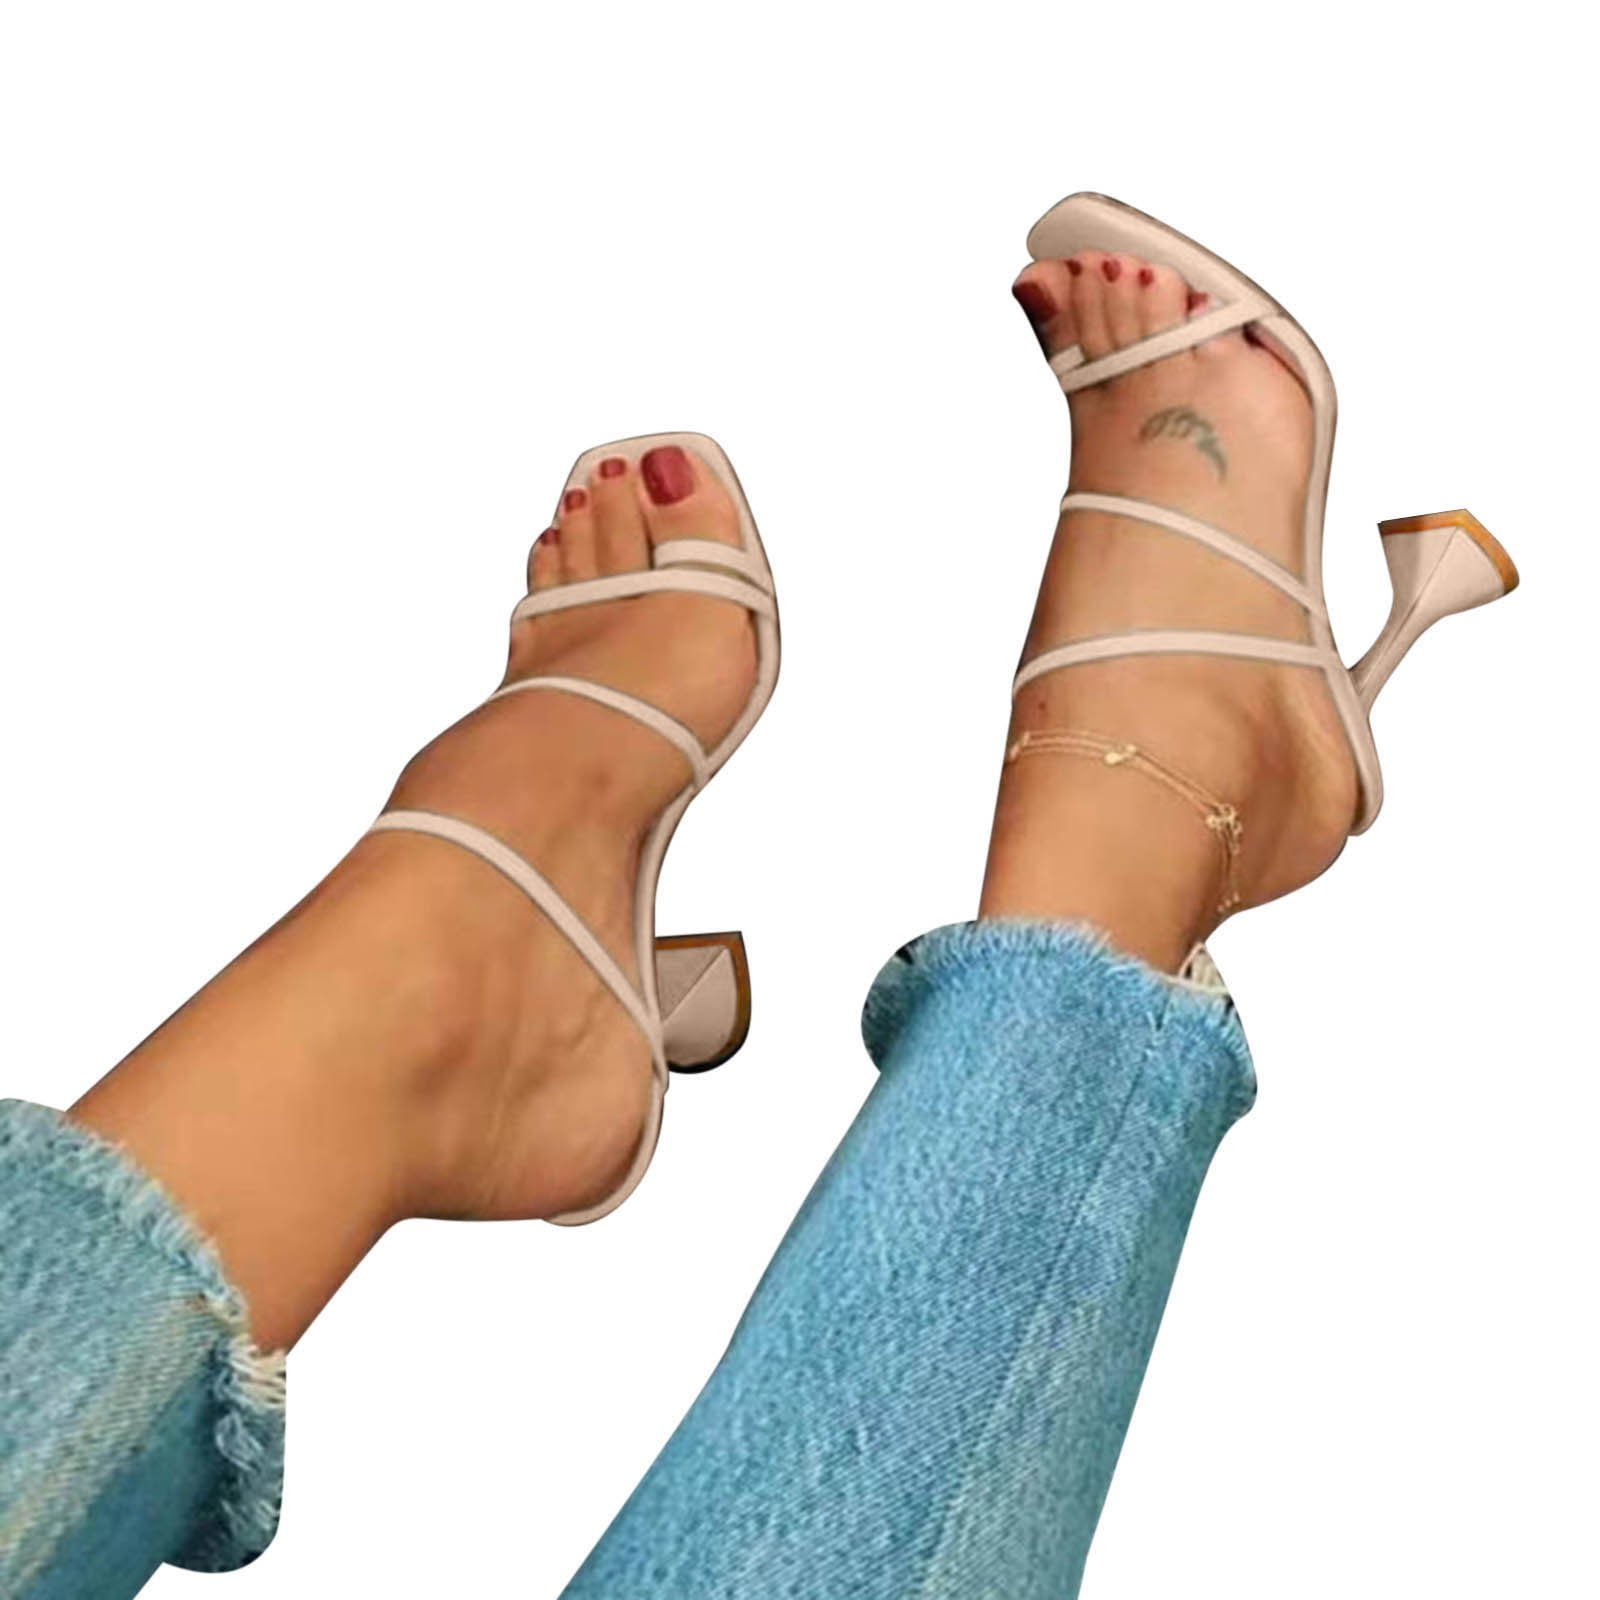 Buy AANA FASHION Women Block Heel Sandal| Glass Heel | Sandal for Women |  Casual Heel Sandal for Party | Women Footwear at Amazon.in